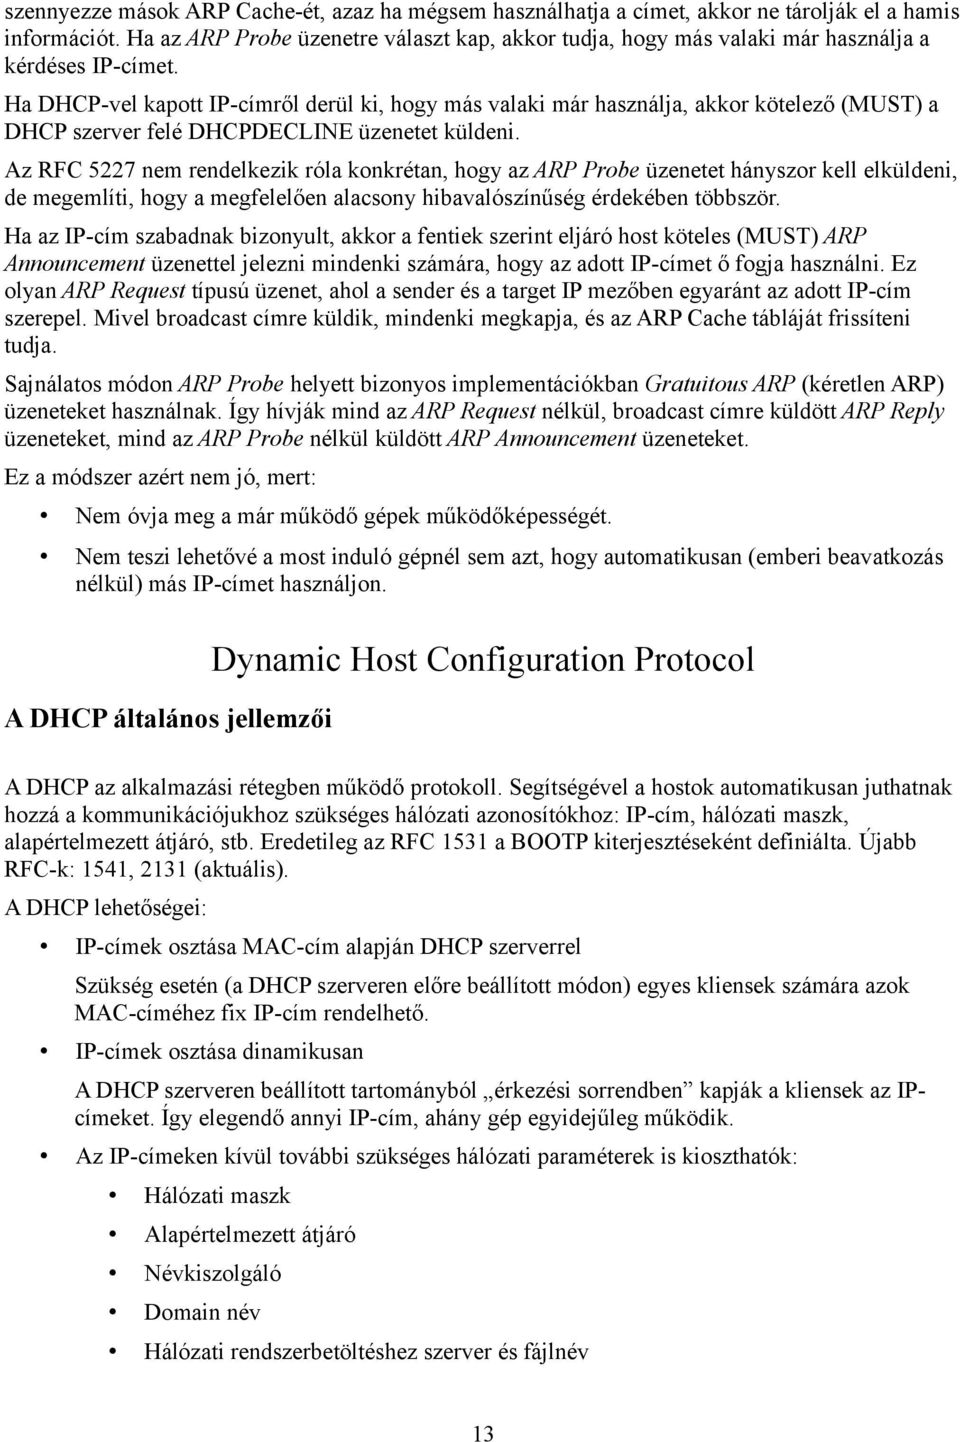 Ha DHCP-vel kapott IP-címről derül ki, hogy más valaki már használja, akkor kötelező (MUST) a DHCP szerver felé DHCPDECLINE üzenetet küldeni.